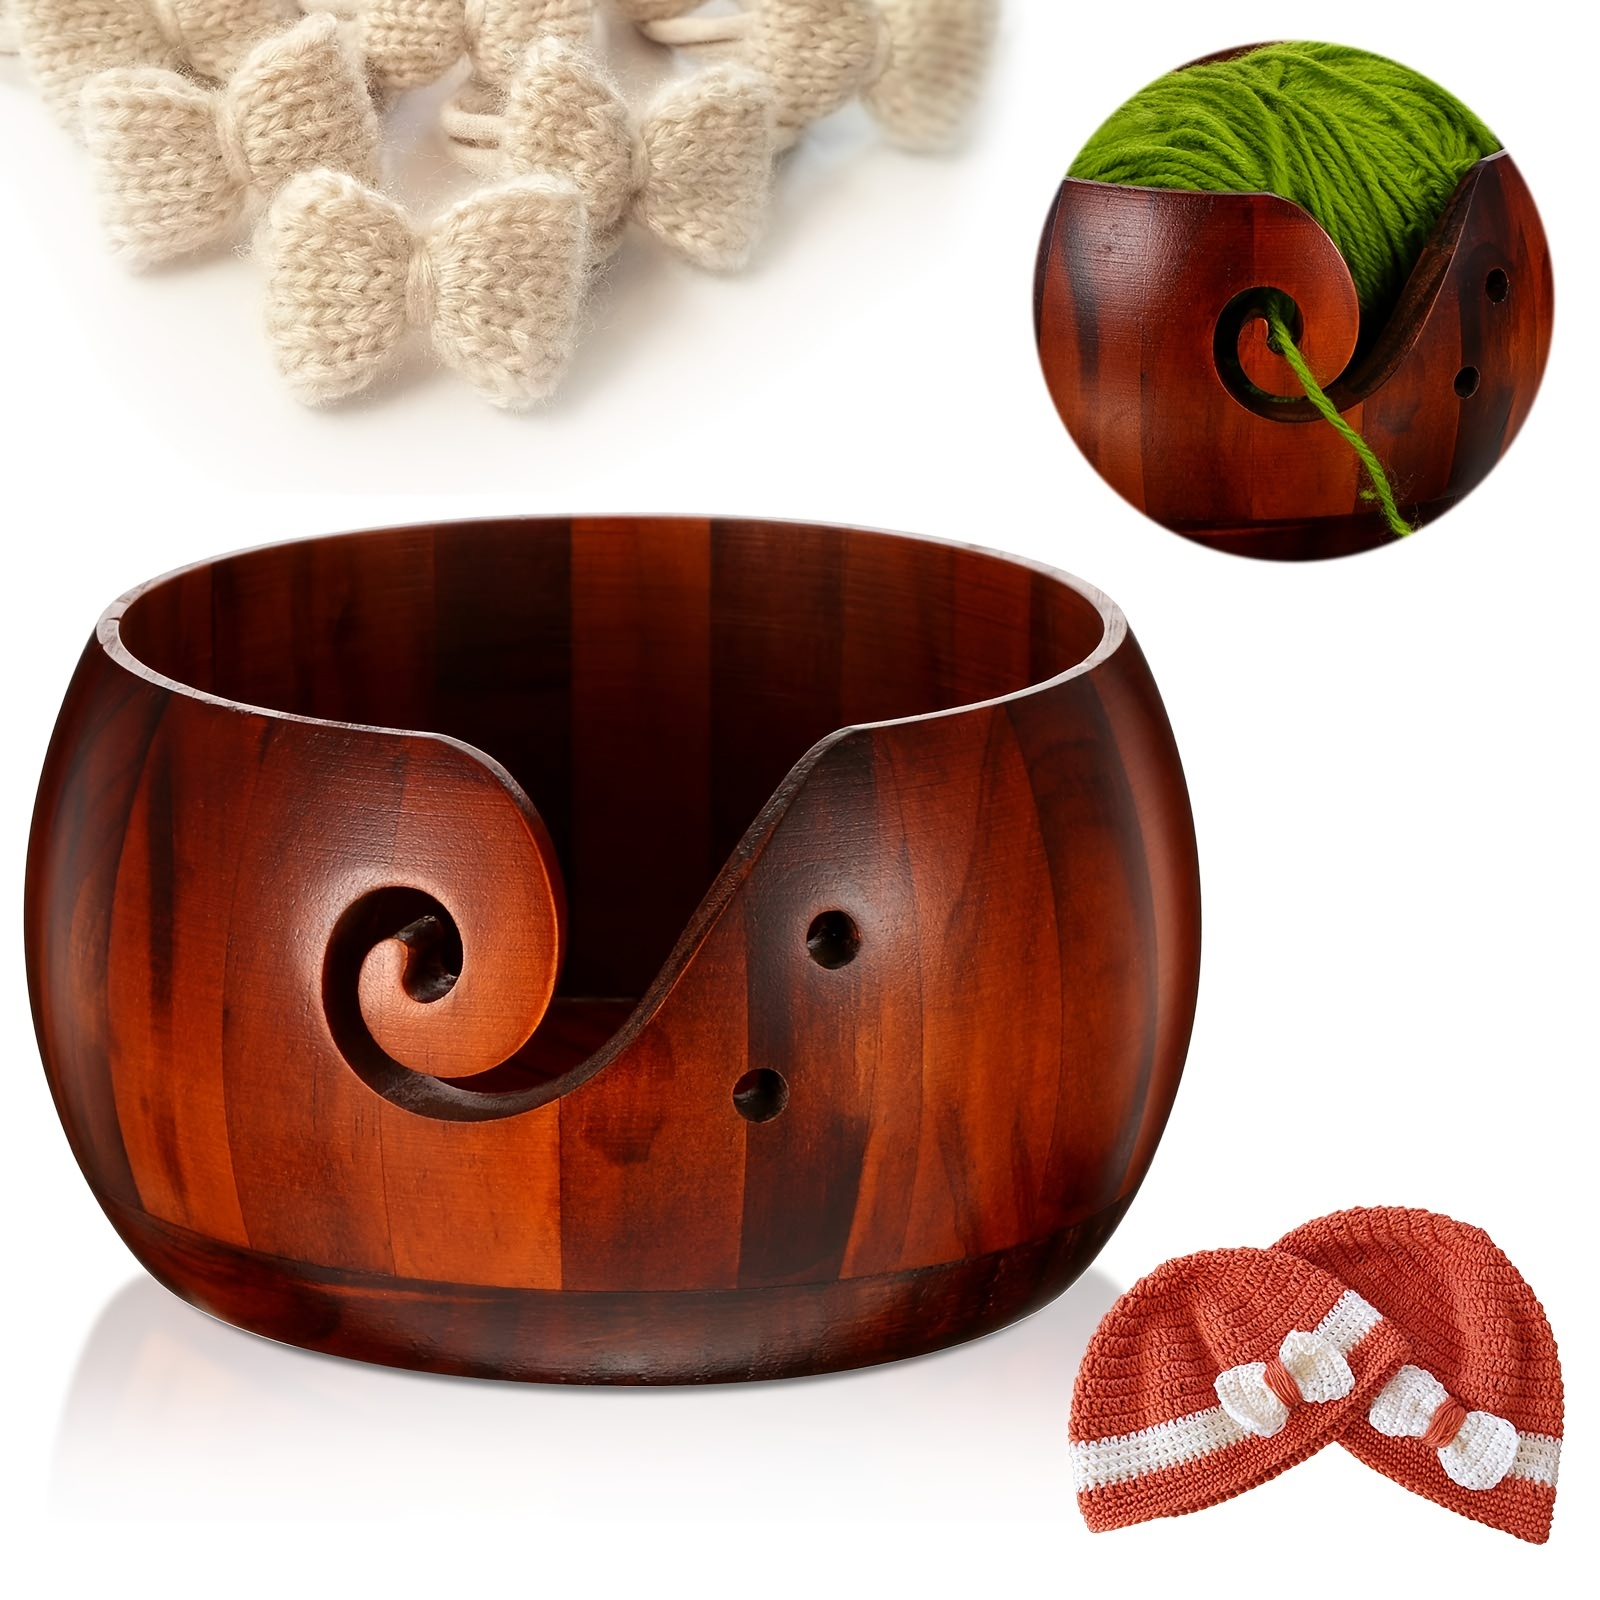 Wooden Yarn Bowl,Yarn Bowls with Lid for Knitting Crochet Yarn Ball Holder  Handmade Yarn Storage Bowl,Dark Wood